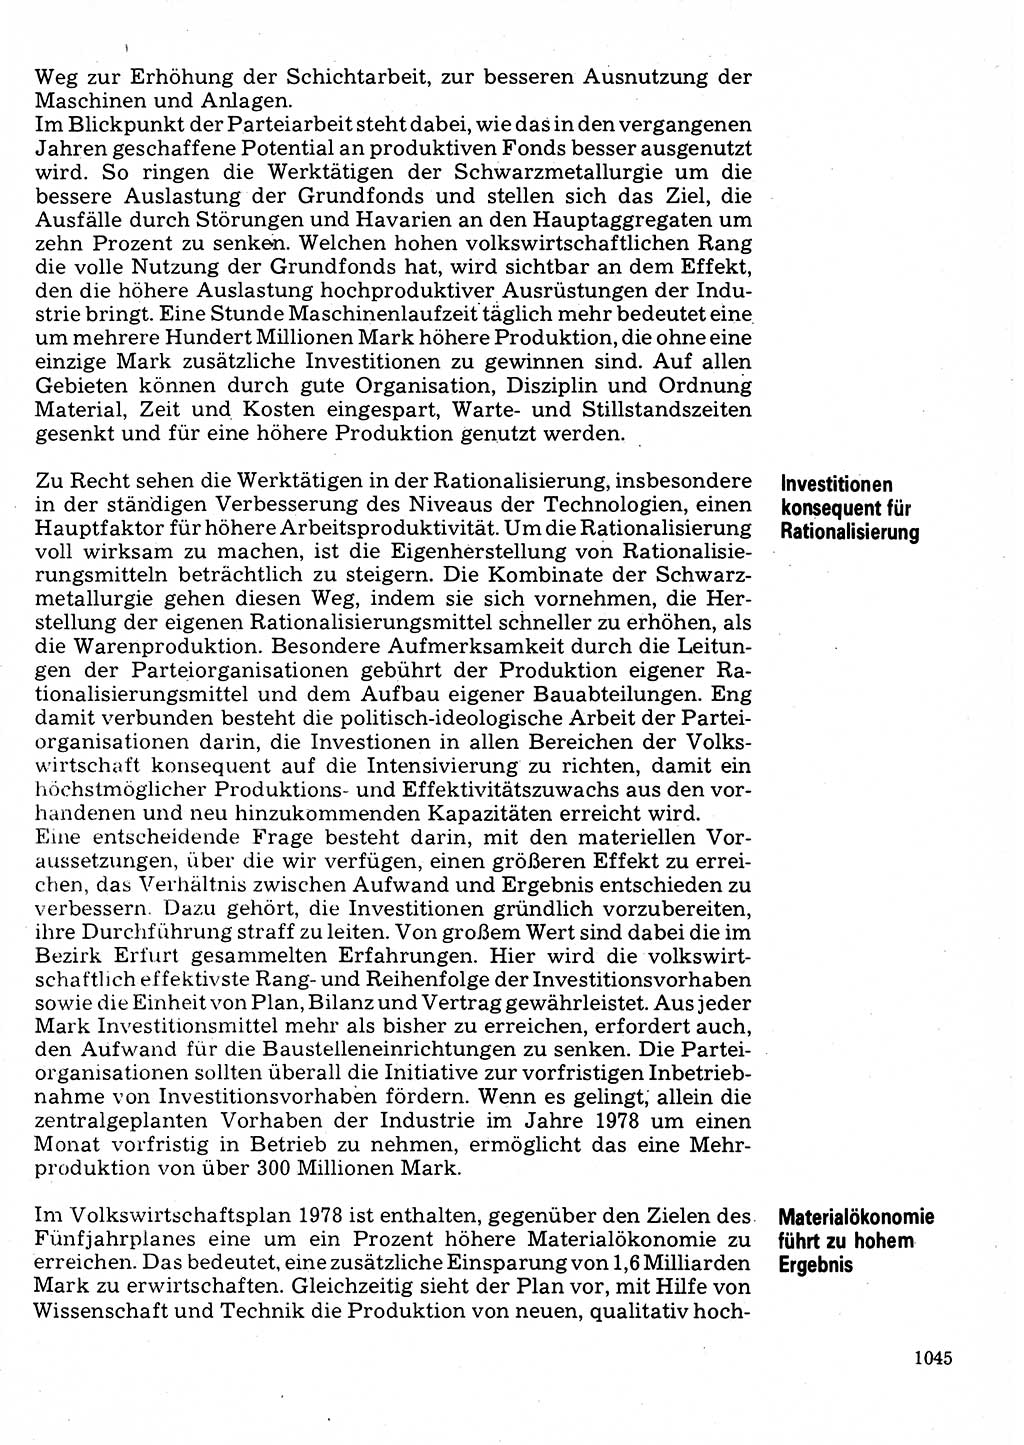 Neuer Weg (NW), Organ des Zentralkomitees (ZK) der SED (Sozialistische Einheitspartei Deutschlands) für Fragen des Parteilebens, 32. Jahrgang [Deutsche Demokratische Republik (DDR)] 1977, Seite 1045 (NW ZK SED DDR 1977, S. 1045)